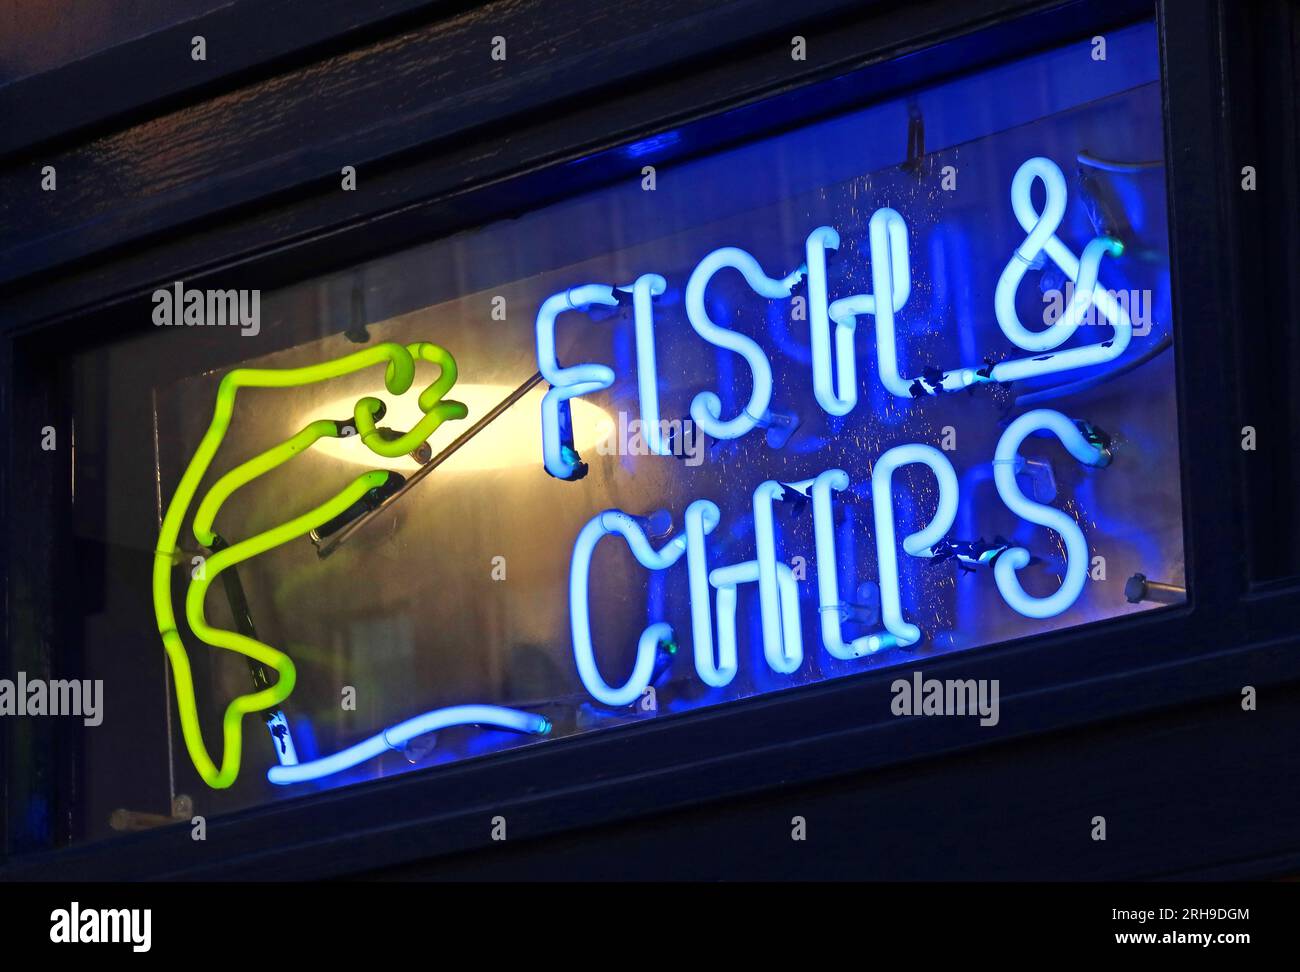 Traditionelles britisches neonblaues und gelbes Schild mit Fisch und Chips, 9 Victoria St, Edinburgh, Schottland, Vereinigtes Königreich, Stockfoto